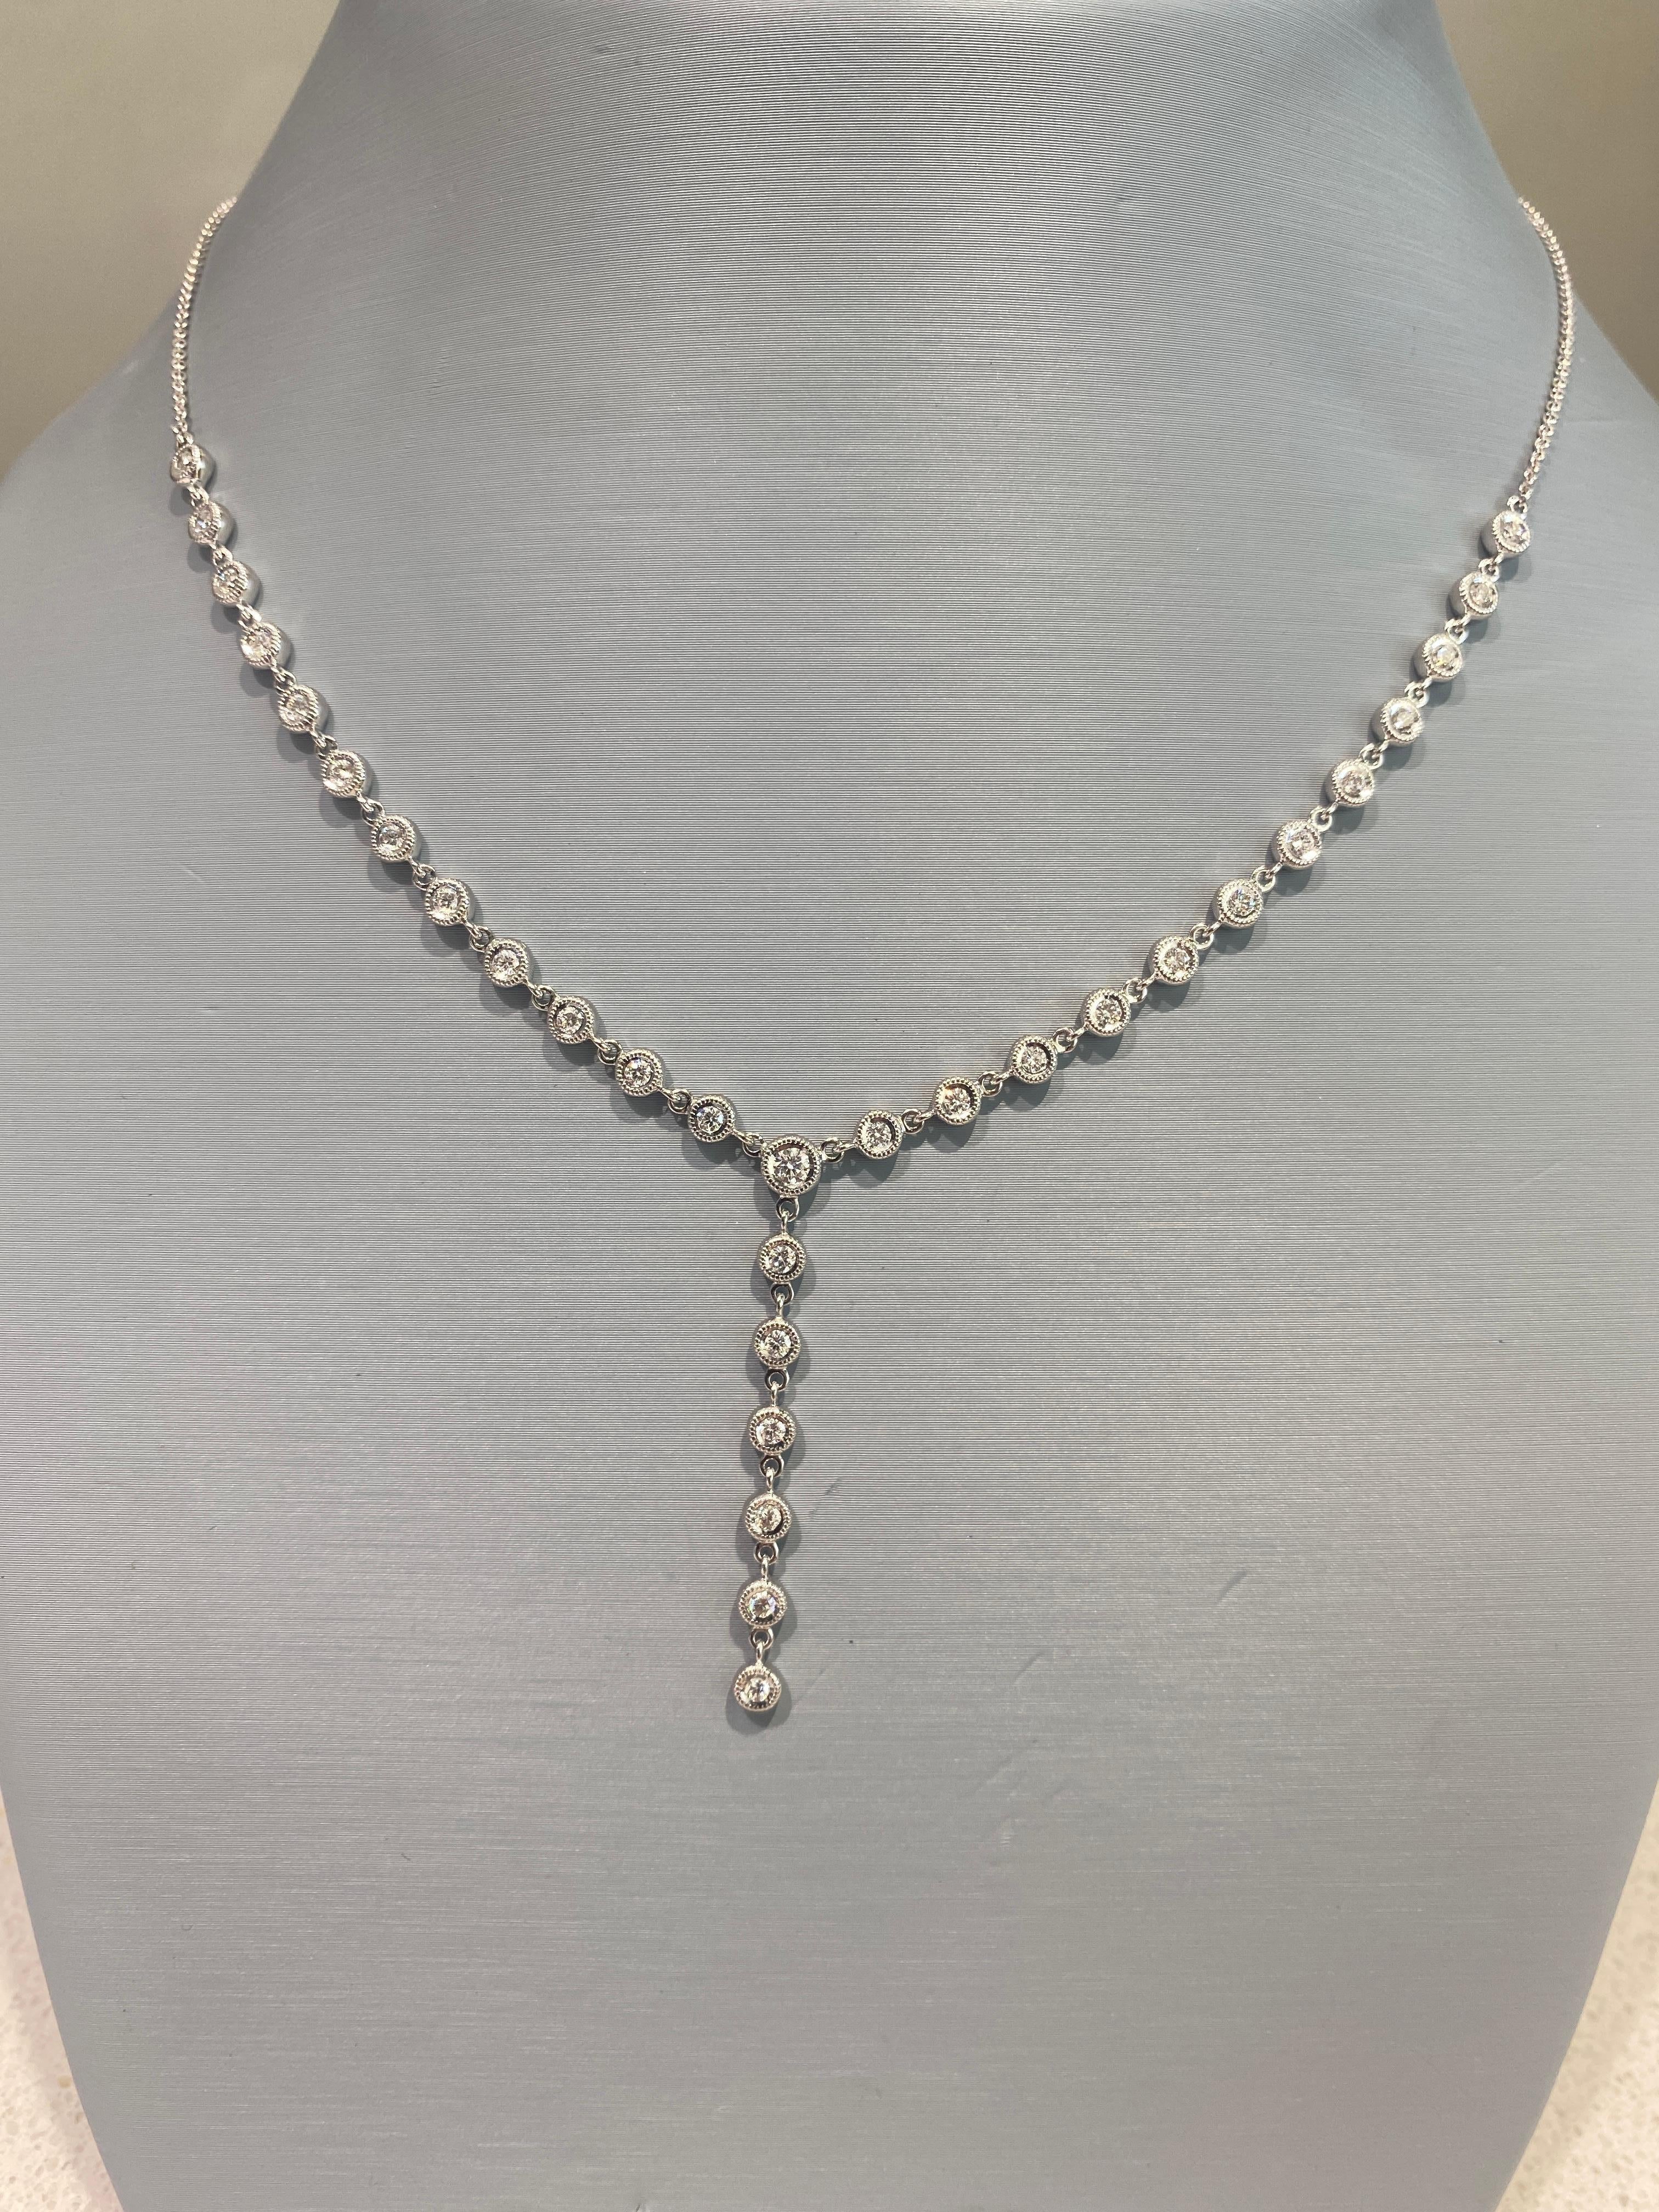 Ce collier style lasso de Simon G. présente des diamants ronds de taille brillante d'un poids total de 0,92 carat sertis en biseau dans de l'or blanc 18 carats. La chaîne est de 18